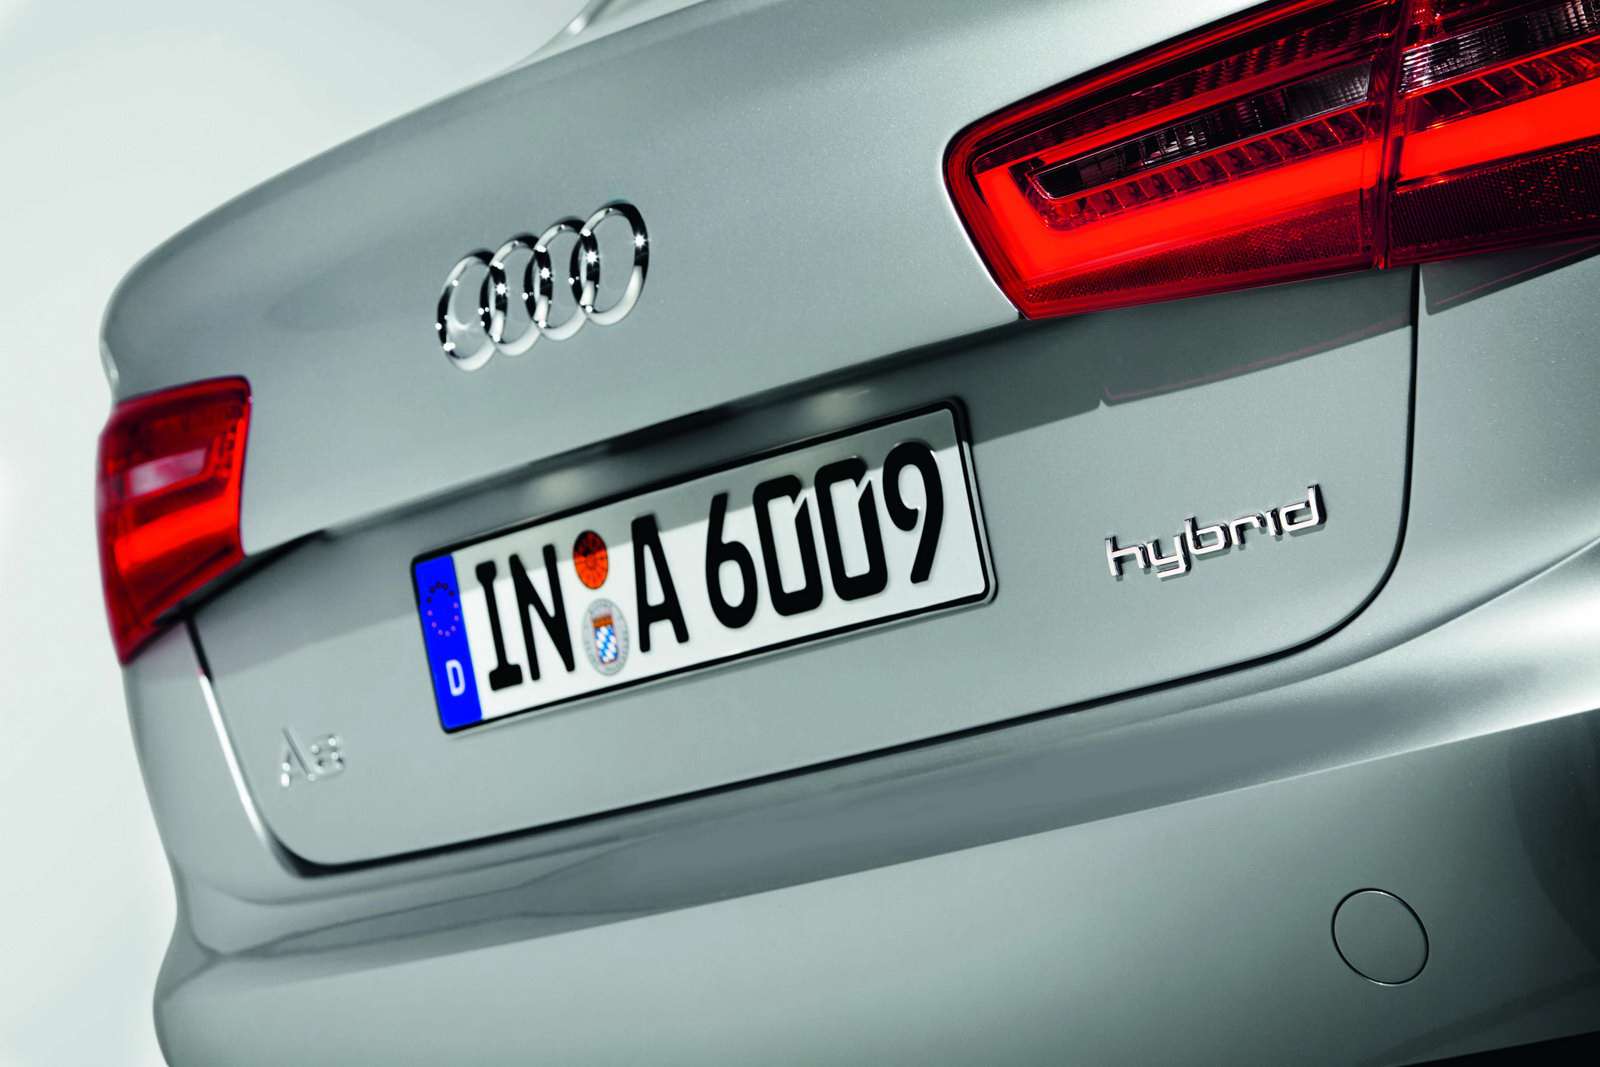 Audi A6 2012 oficjalnie 80 zdjec grudzien 2010